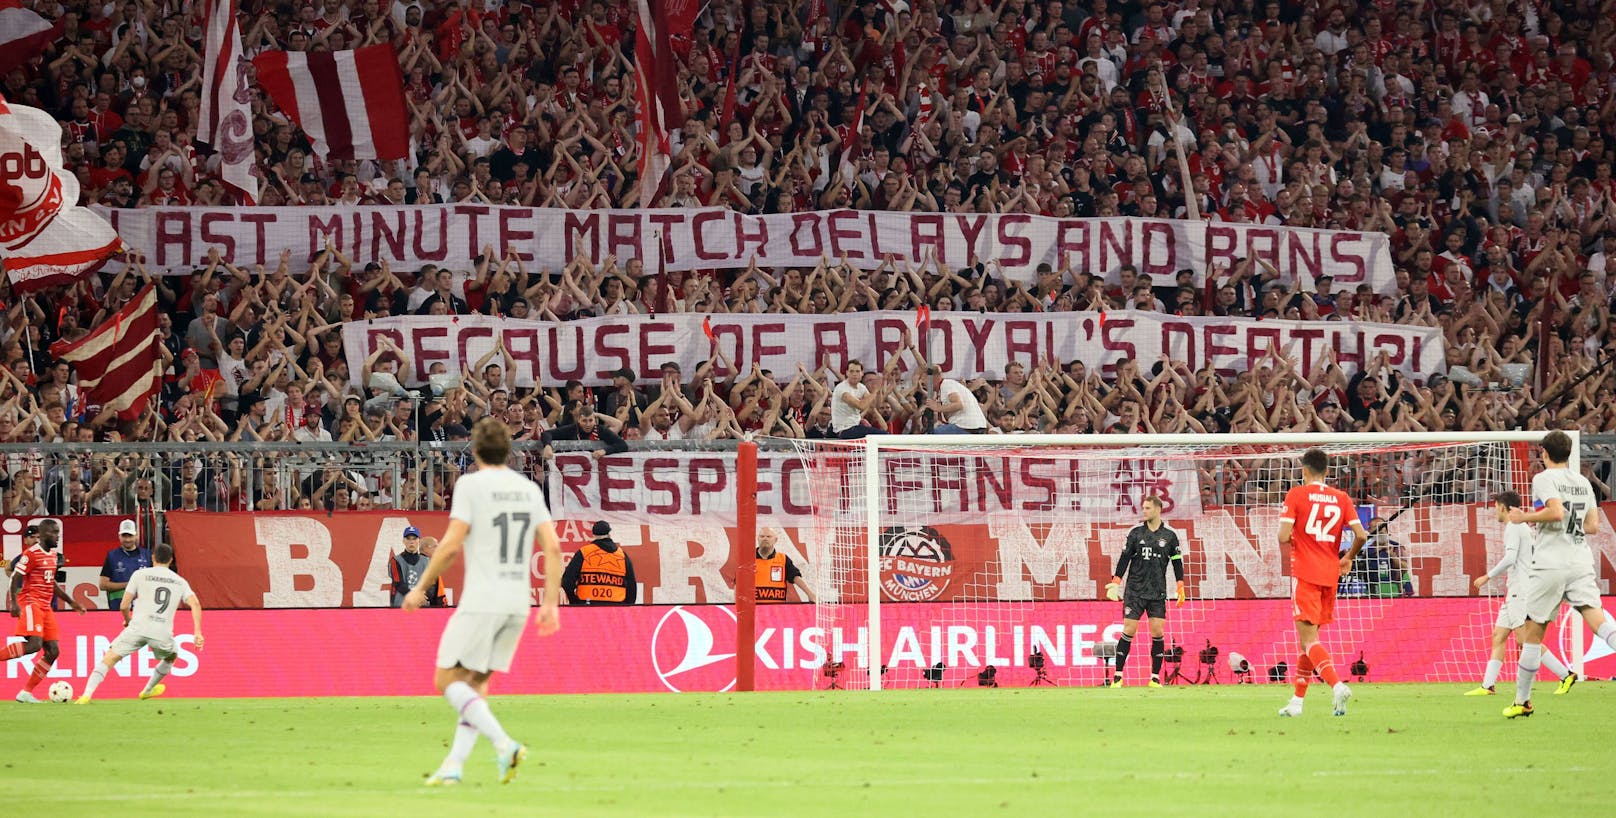 Mit diesem geschmacklosen Spruchband sorgen die Bayern-Fans für Aufregung.